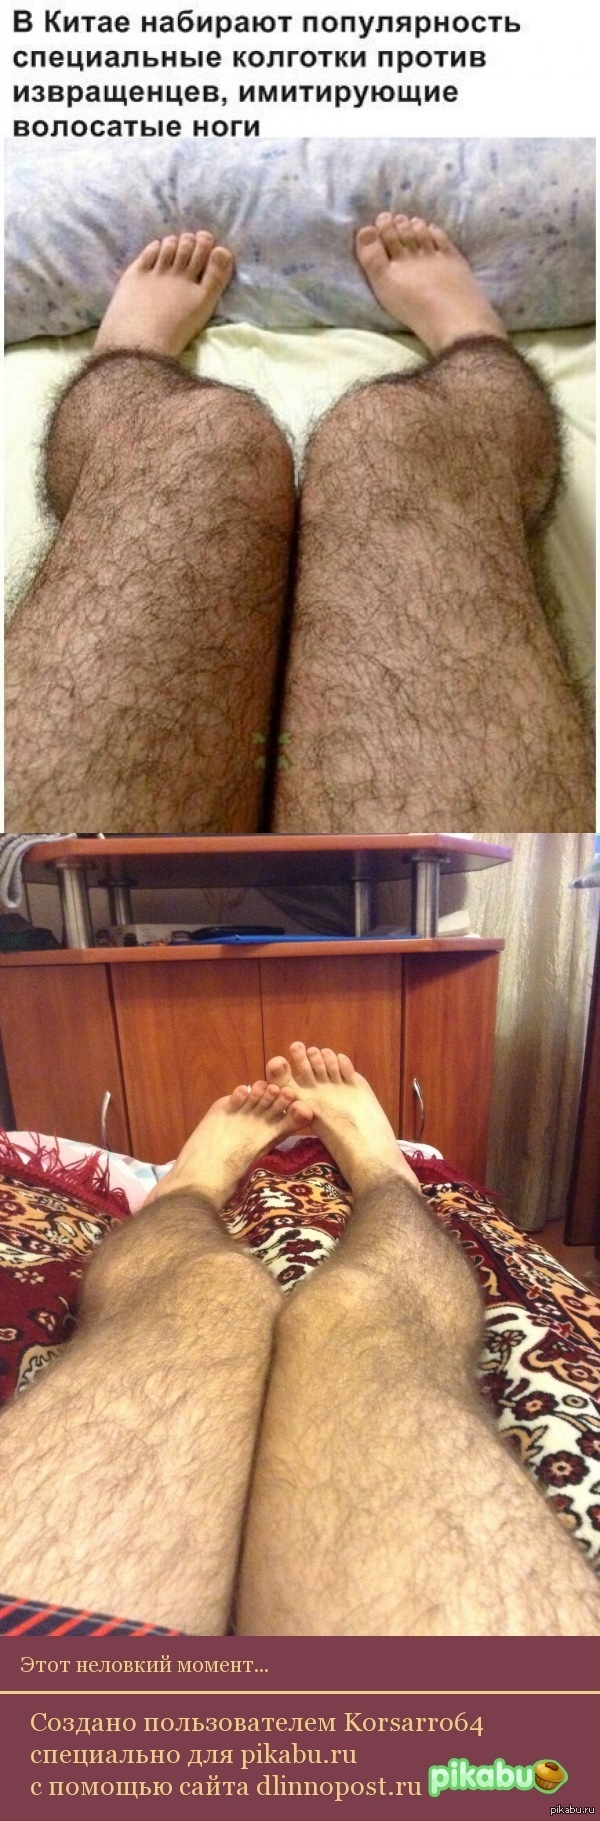 исламский сонник волосатые ноги фото 25